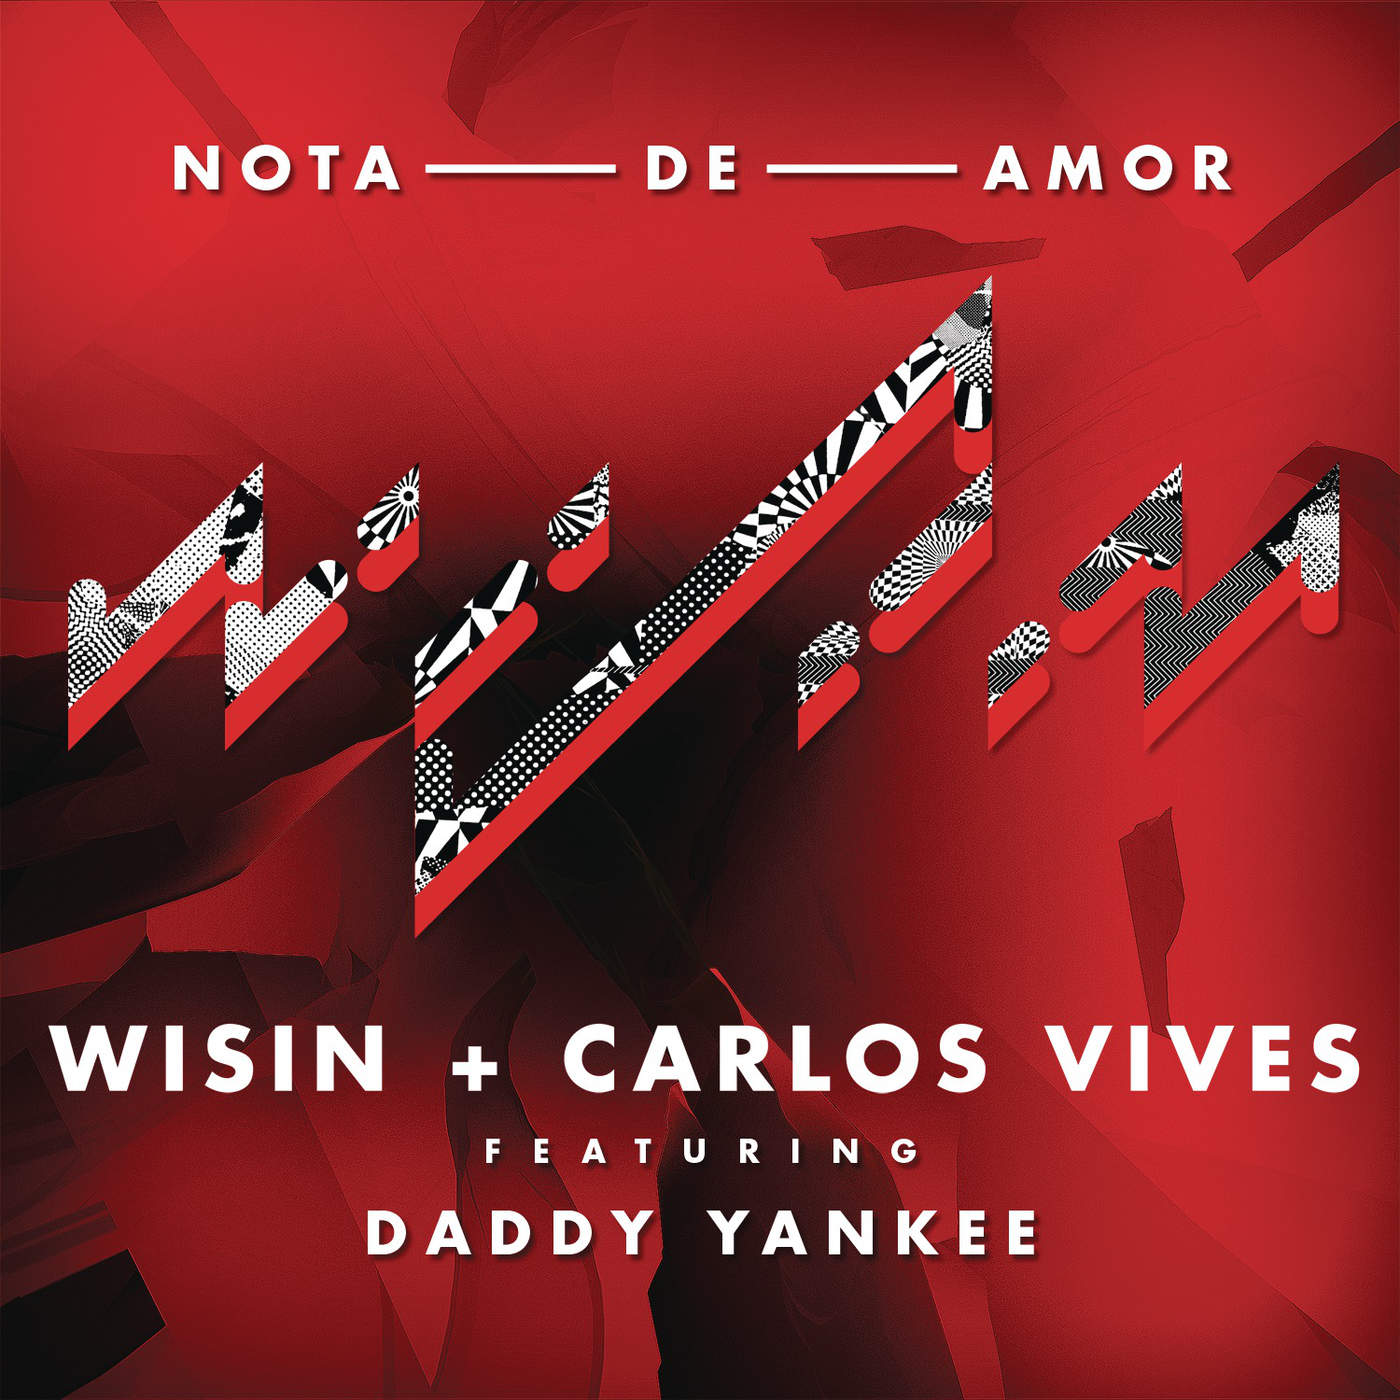 Wisin Ft Carlos Vives y Daddy Yankee - Nota De Amor